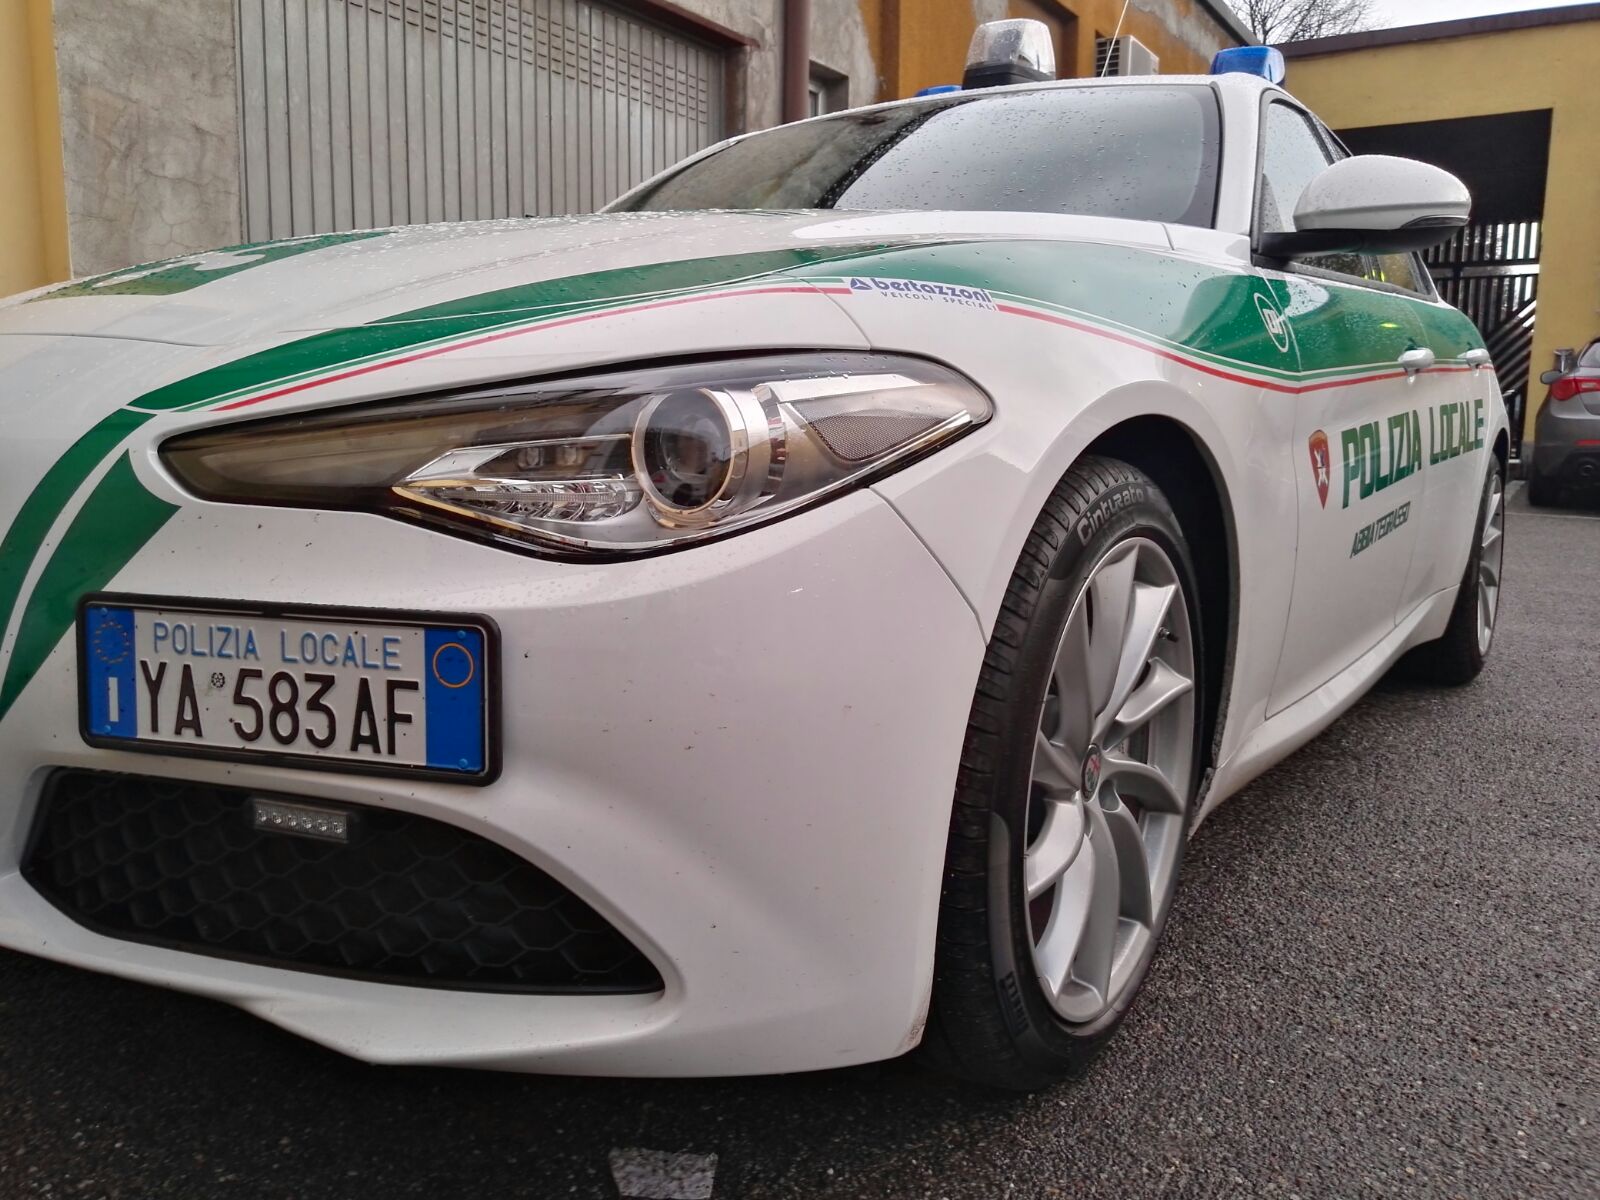 Polizia Locale reparto trasporto organi: Abbiategrasso crea il primo servizio in Italia su Alfa Romeo Giulia | Emergency Live 22